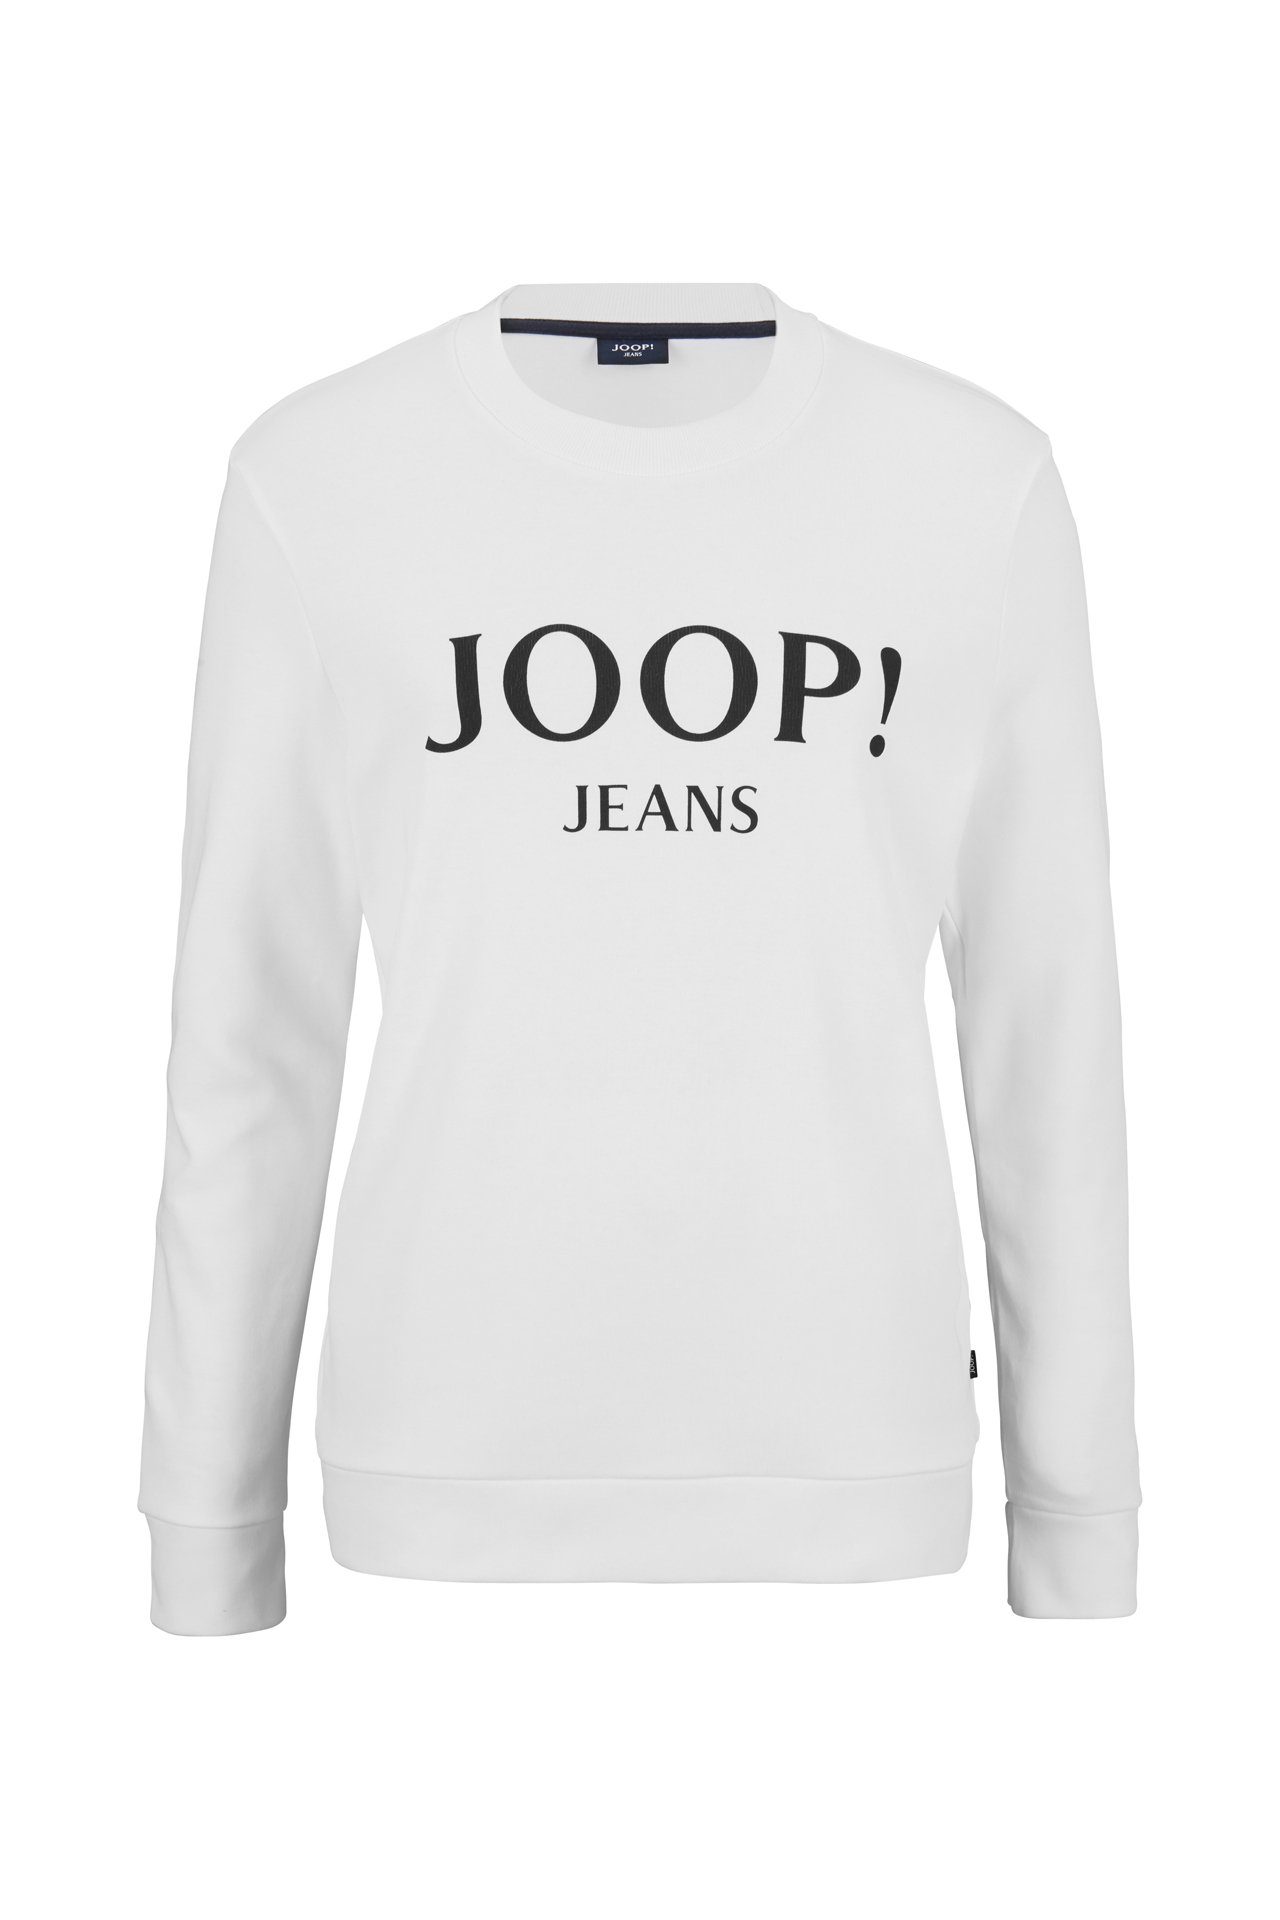 Joop Sweatshirt Jeans